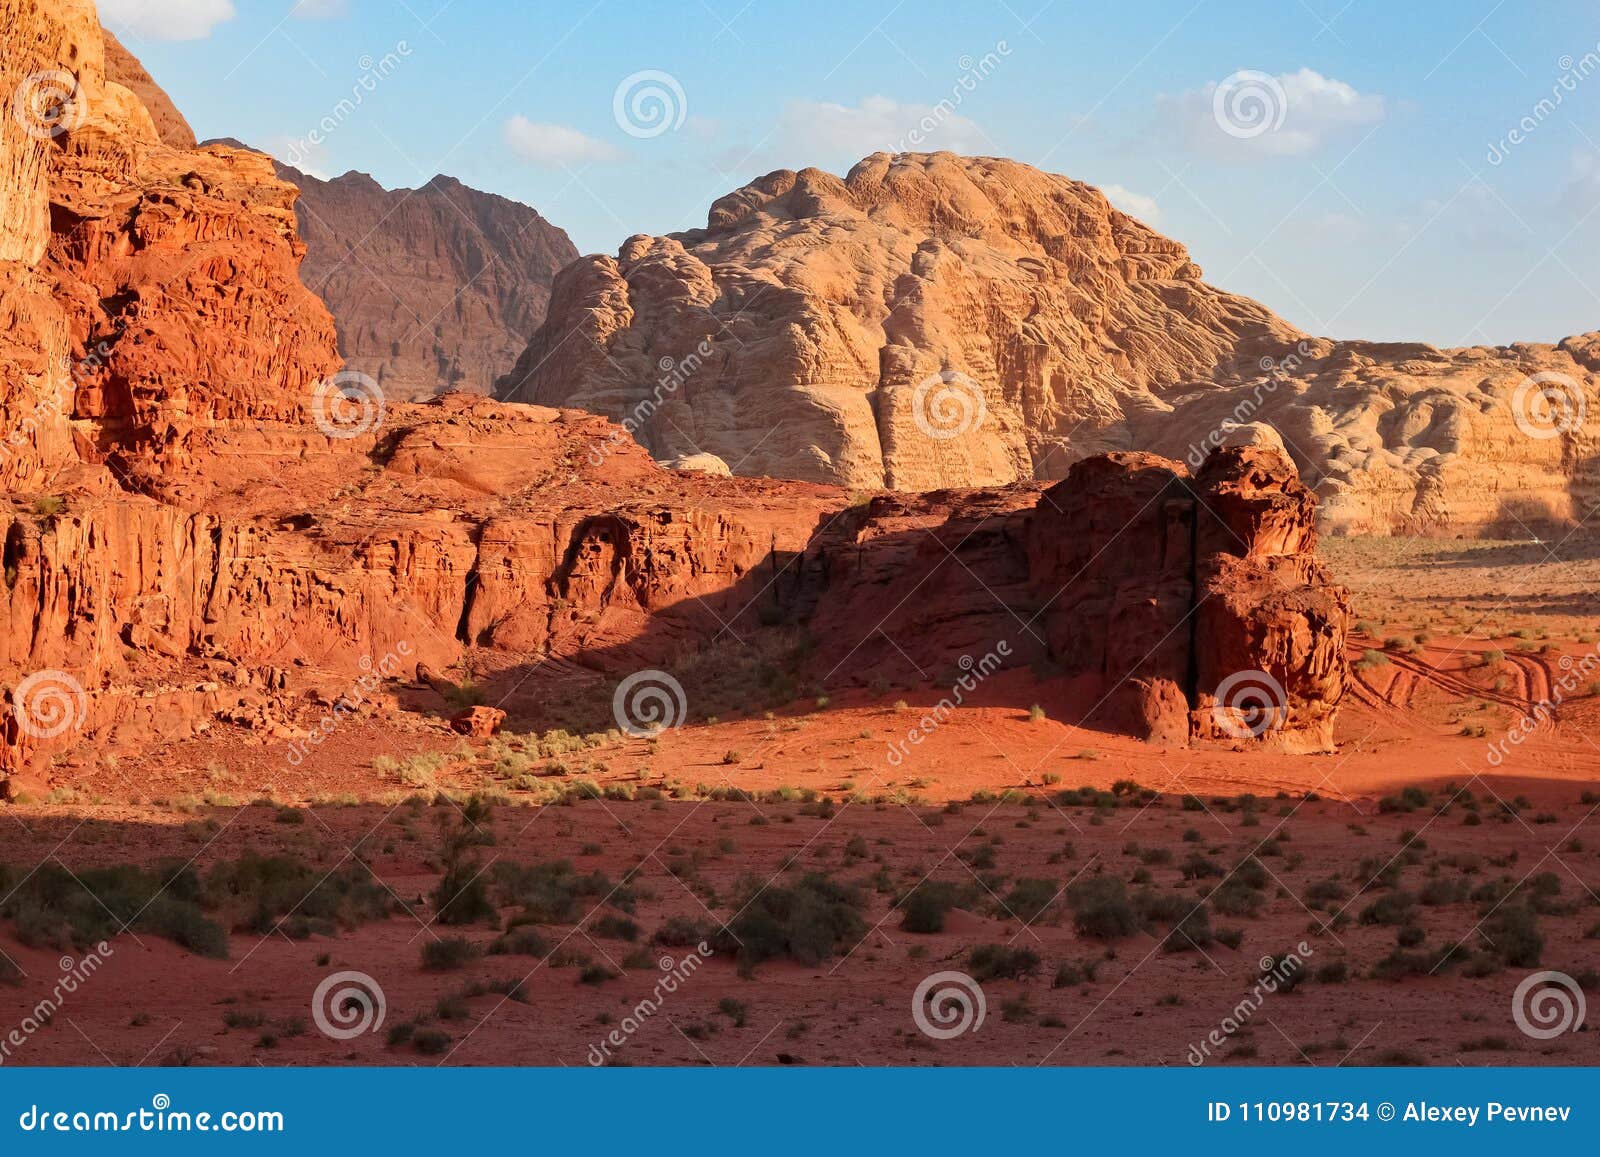 red mountains of the canyon of wadi rum desert in jordan.